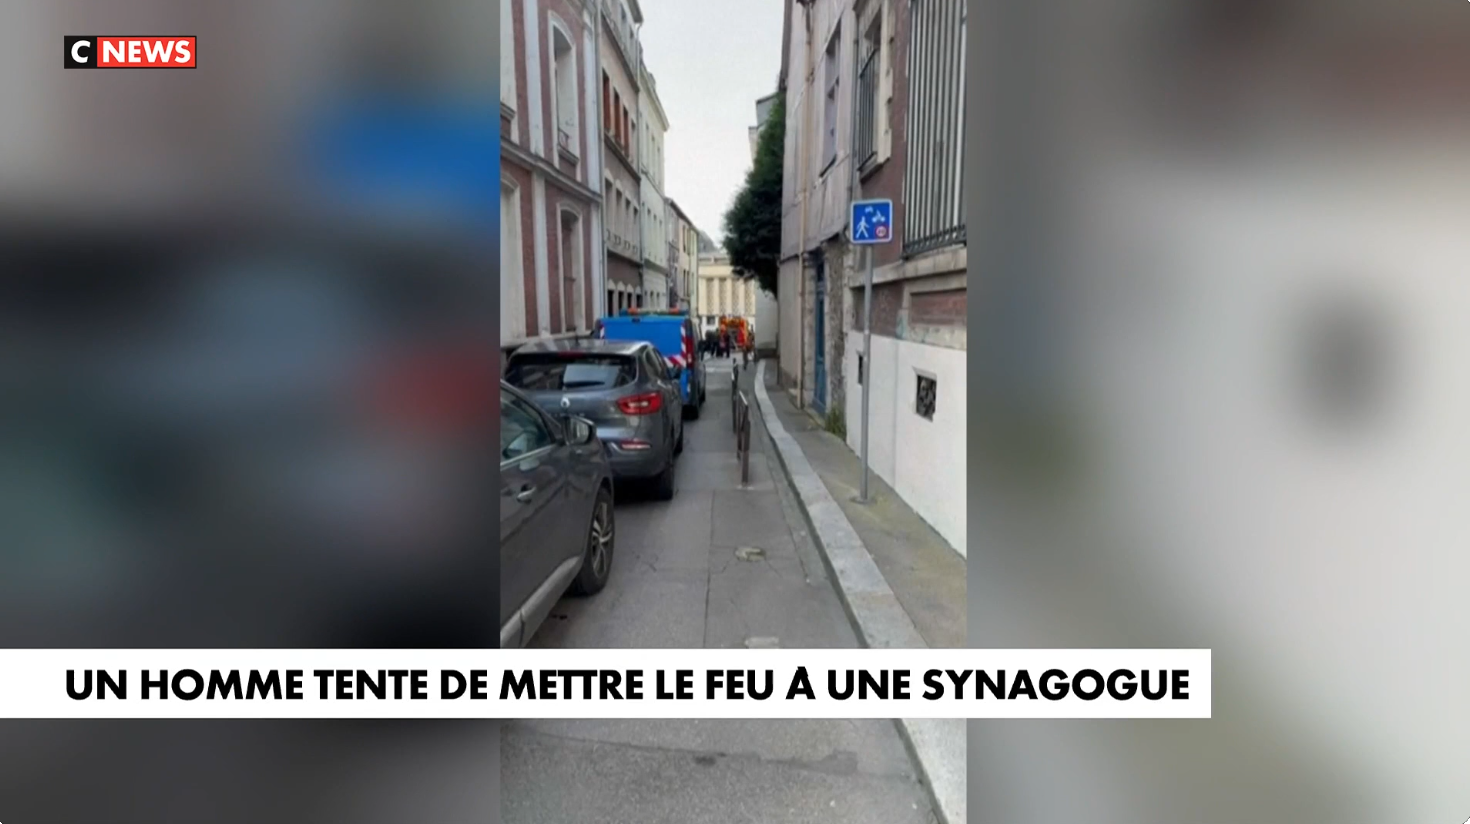 « C'est très dur, il y a beaucoup de dégâts » dans la synagogue, réagit la présidente de la communauté juive de Rouen